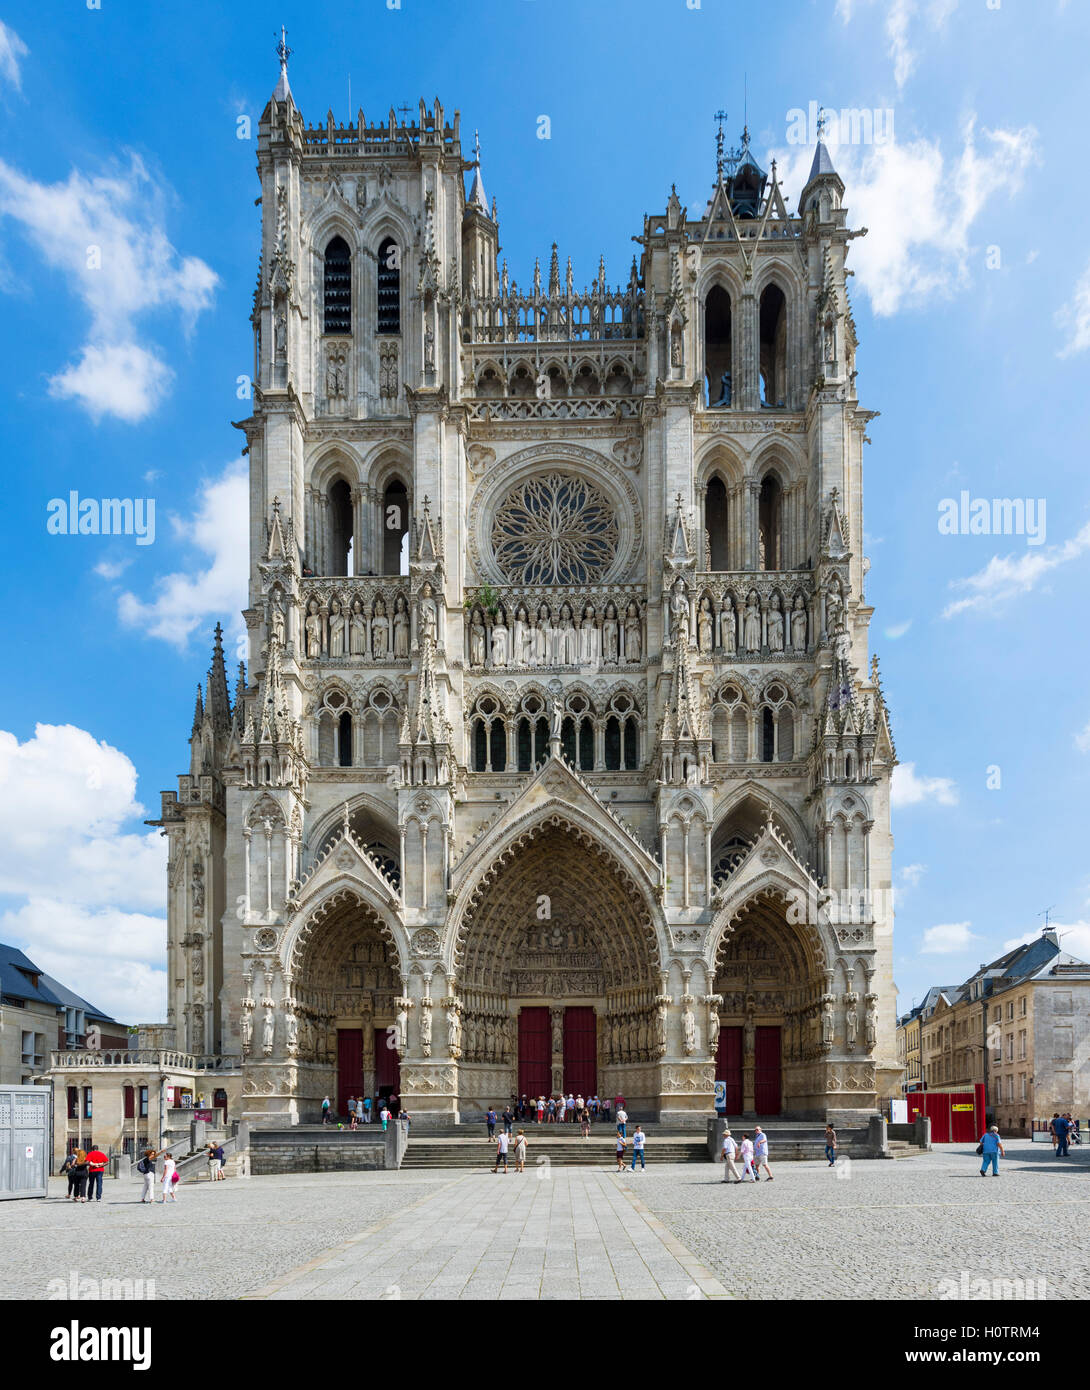 La façade ouest de la cathédrale d'Amiens (Cathédrale Notre-Dame d'Amiens, Amiens, Picardie, France Banque D'Images